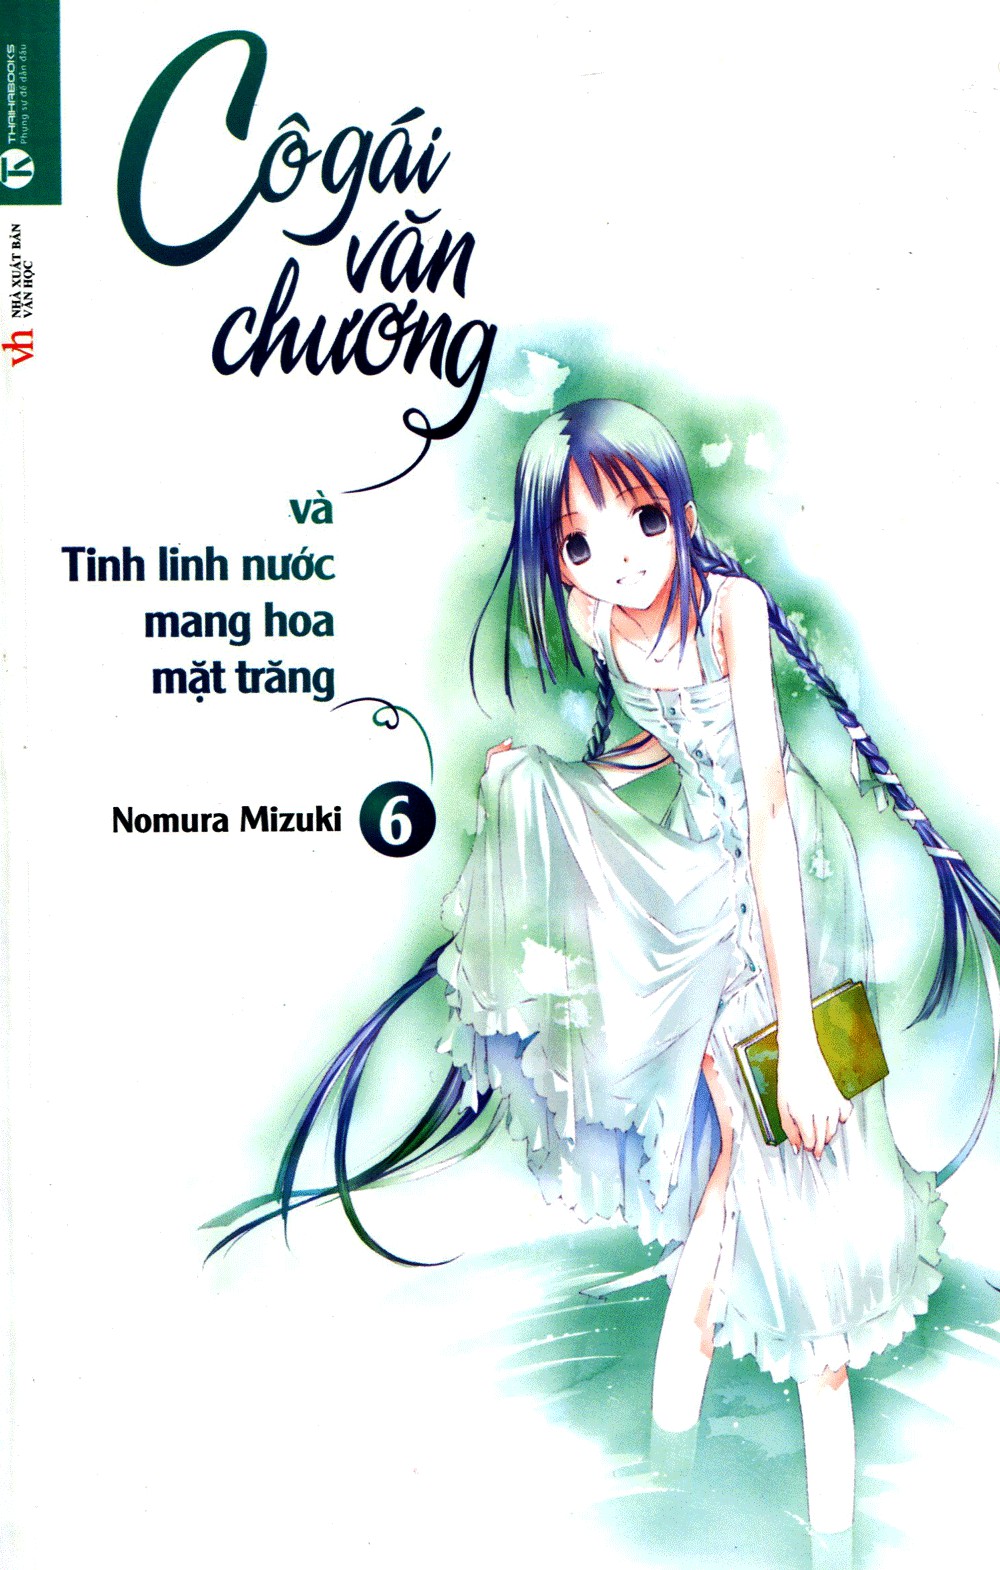 Cô Gái Văn Chương Và Tinh Linh Nước Mang Hoa Mặt Trăng - Nomura Mizuki